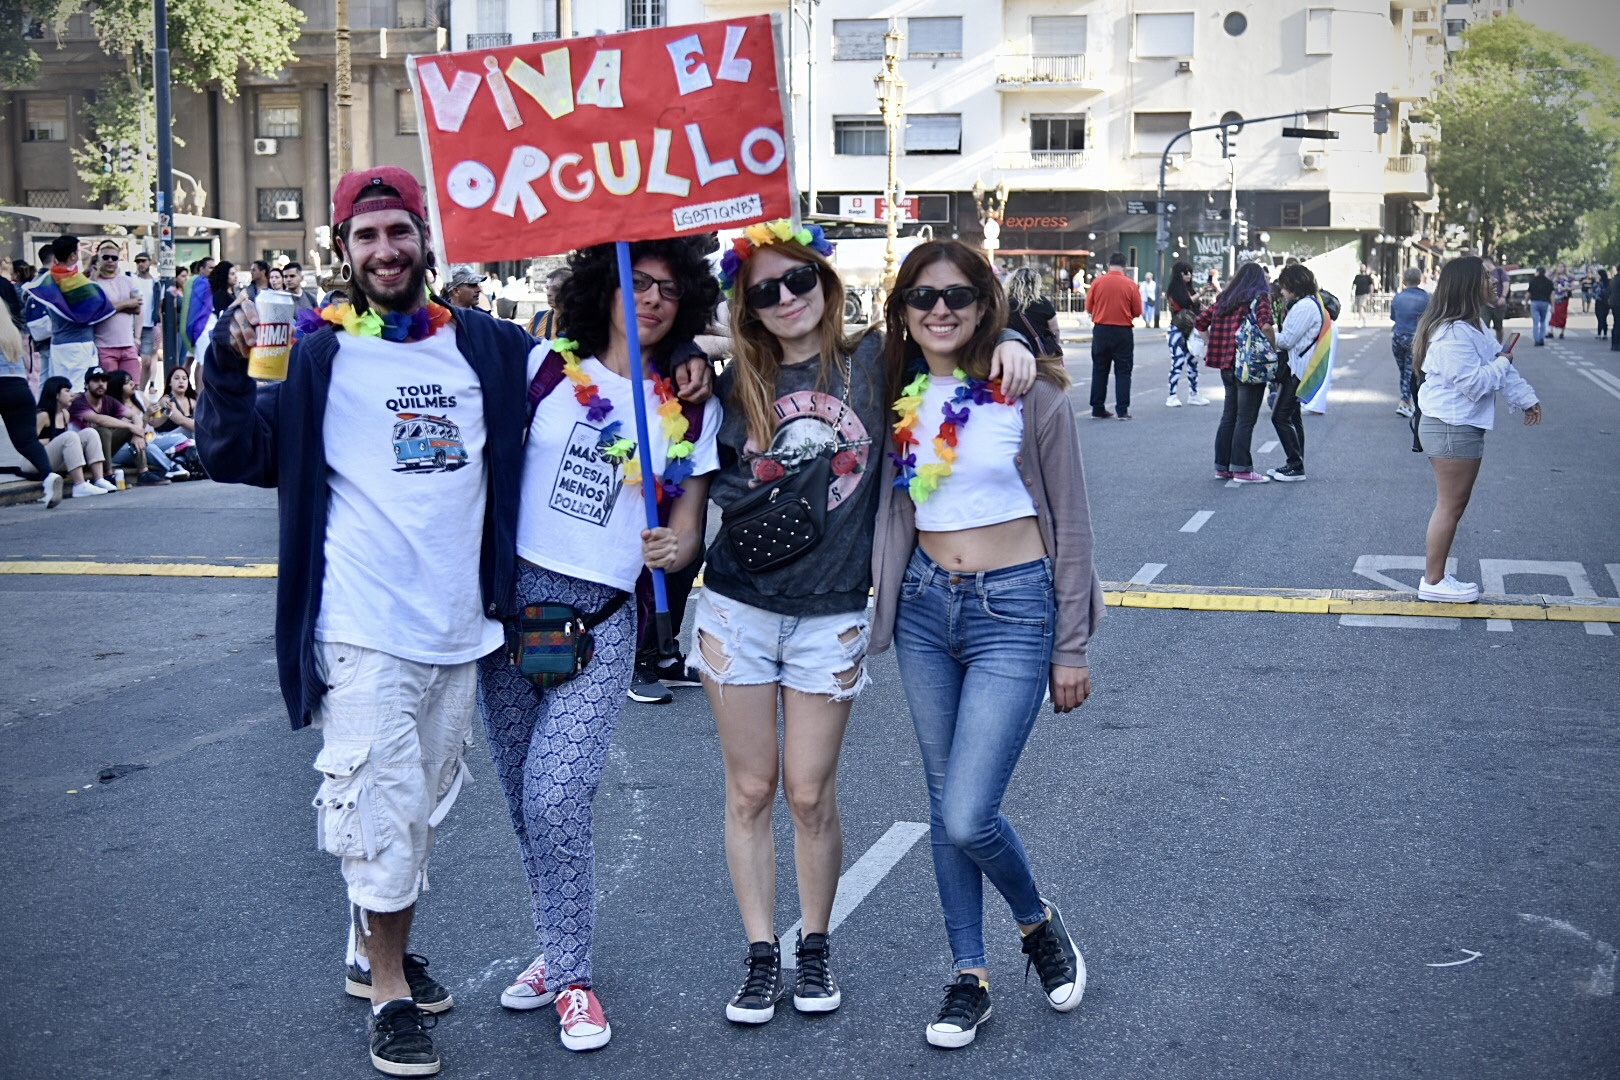 "Viva el orgullo", "Queremos ser libres", "Basta de discriminación", fueron algunos de los mensajes que resonaron en la marcha (Crédito: Ariel Torres)